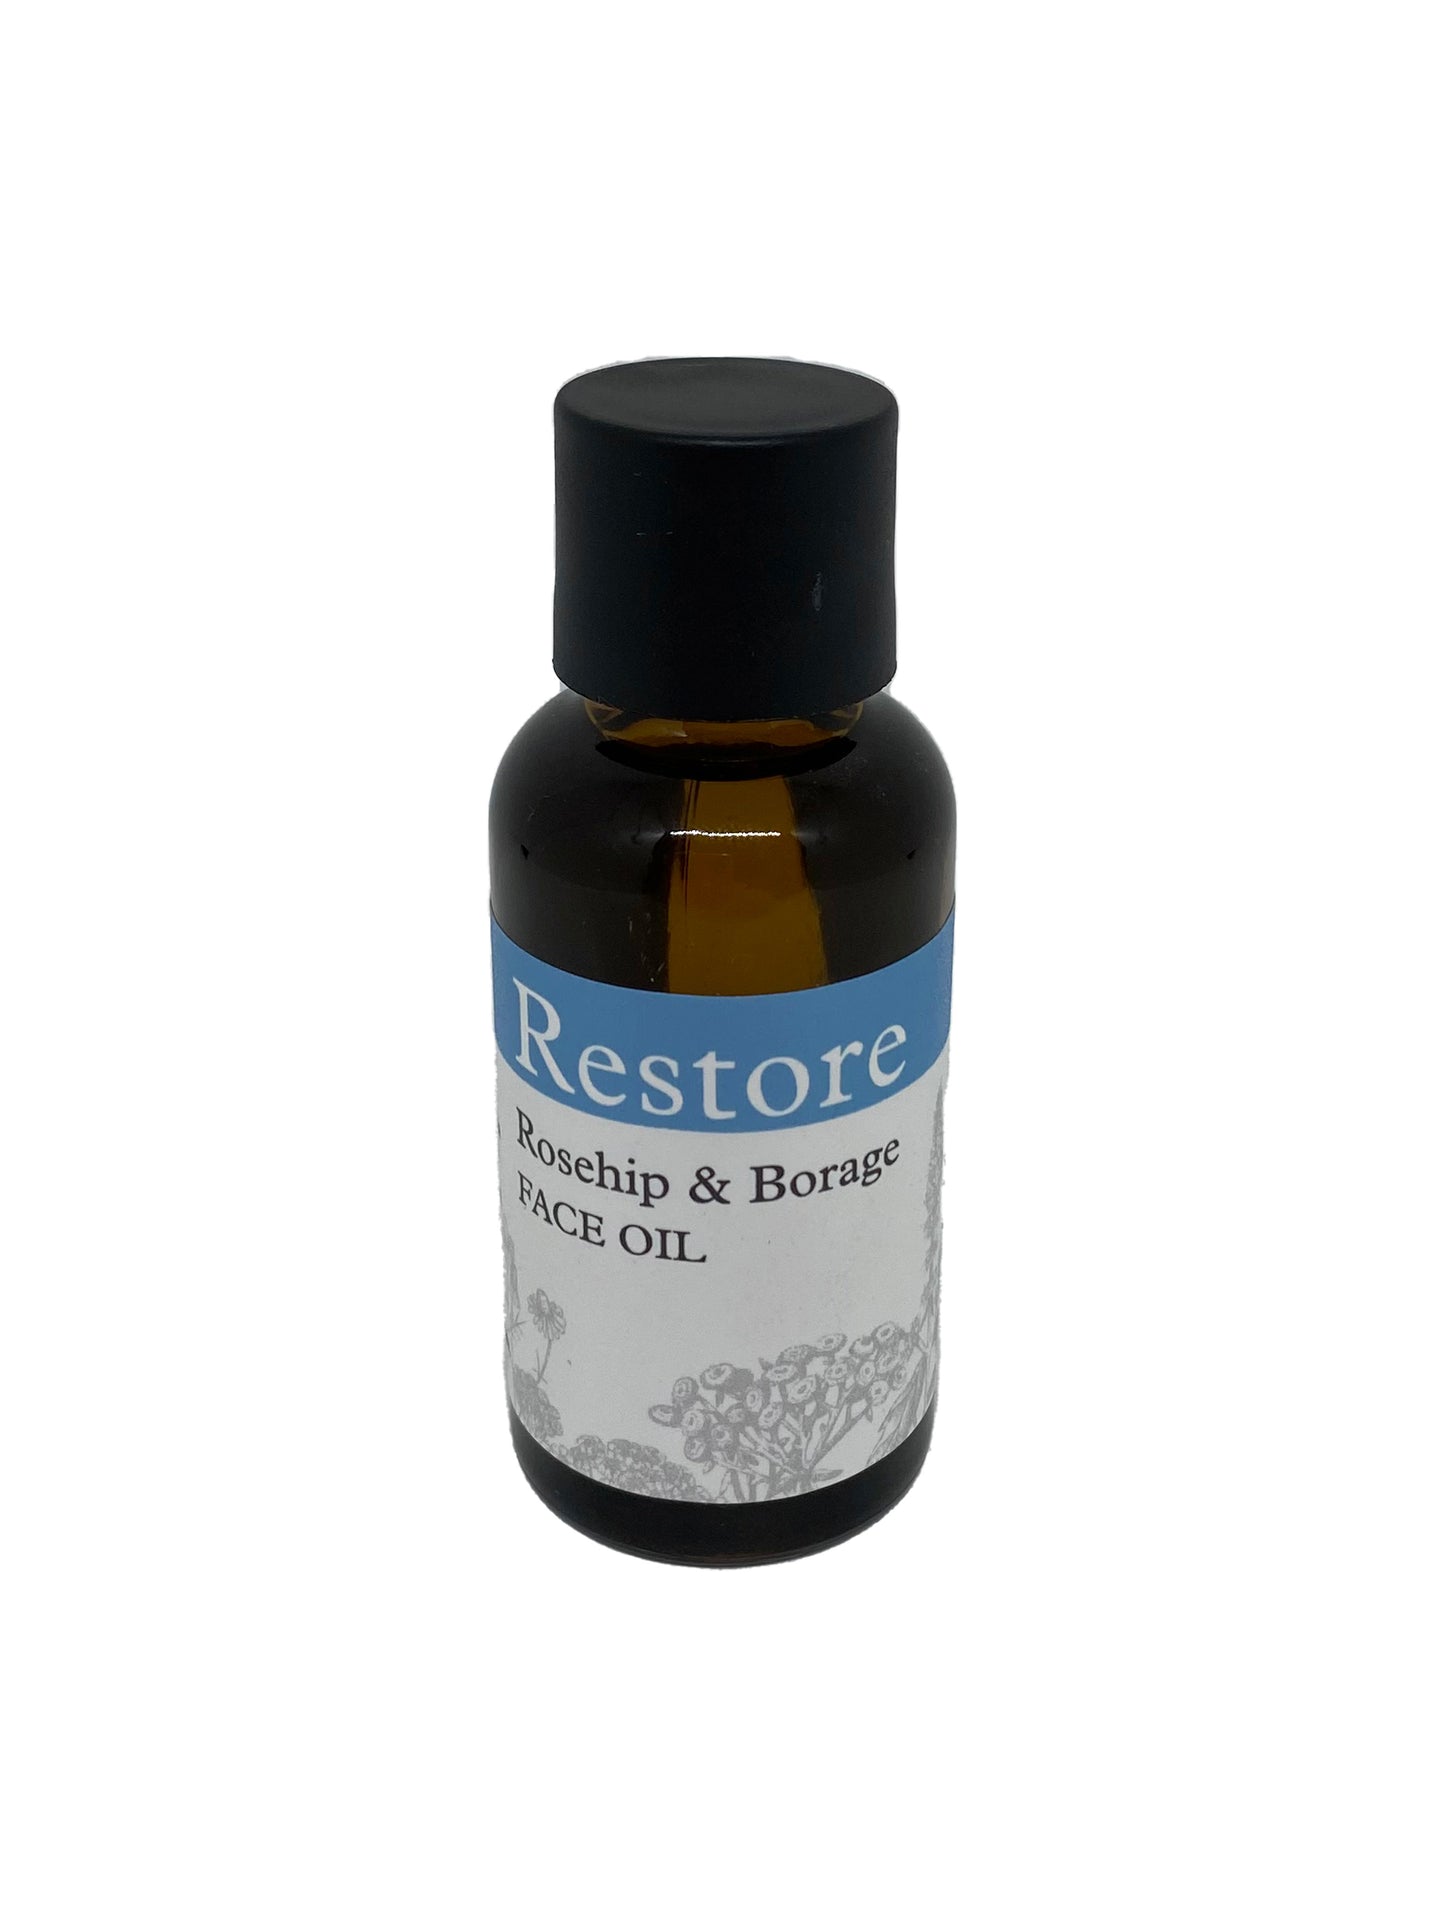 Restore: Rosehip & Borage Face Oil